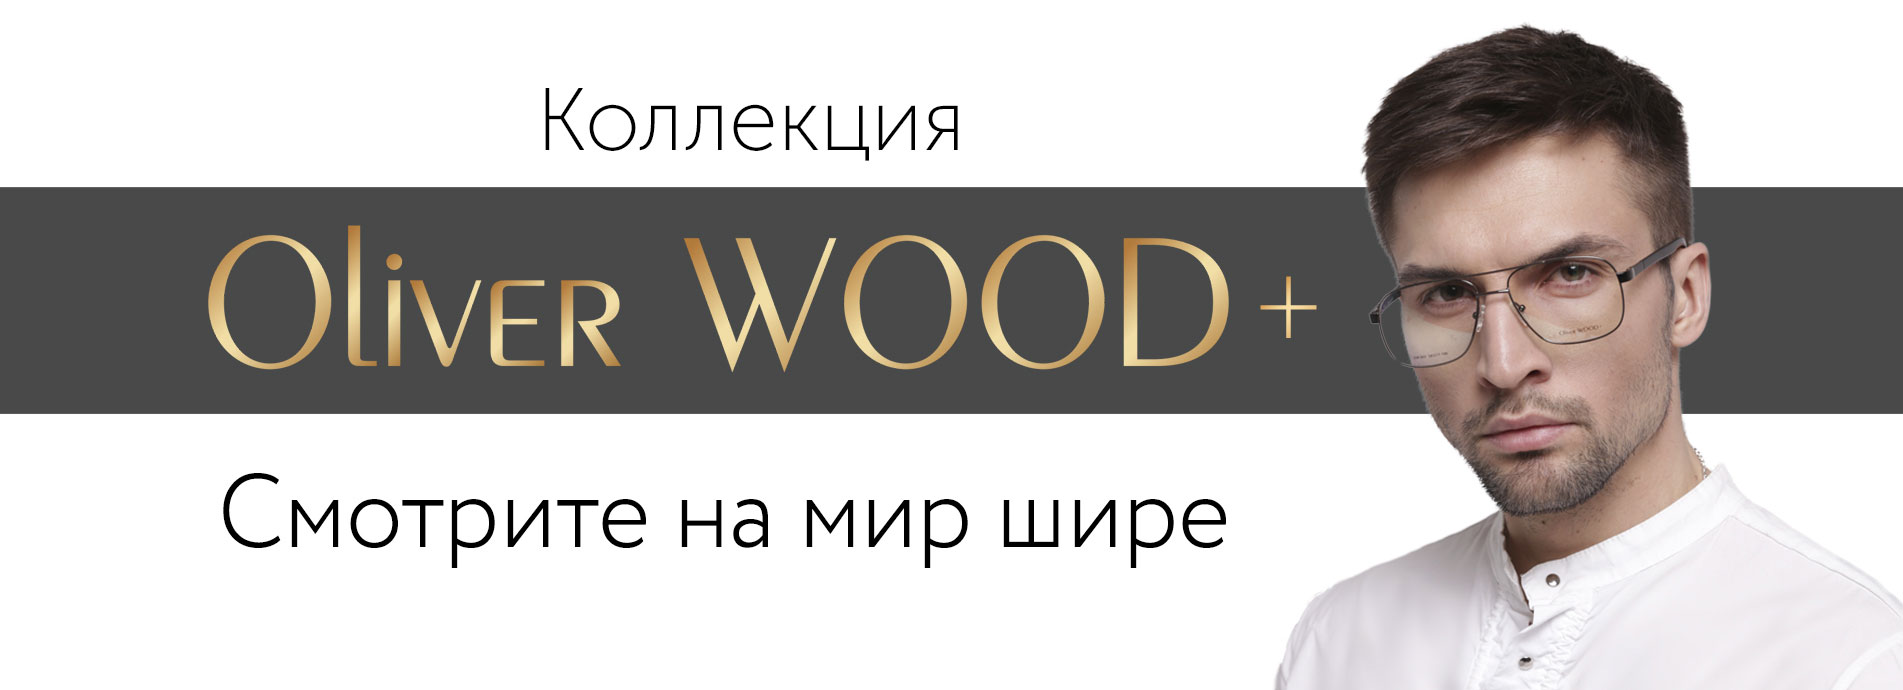 Oliver wood